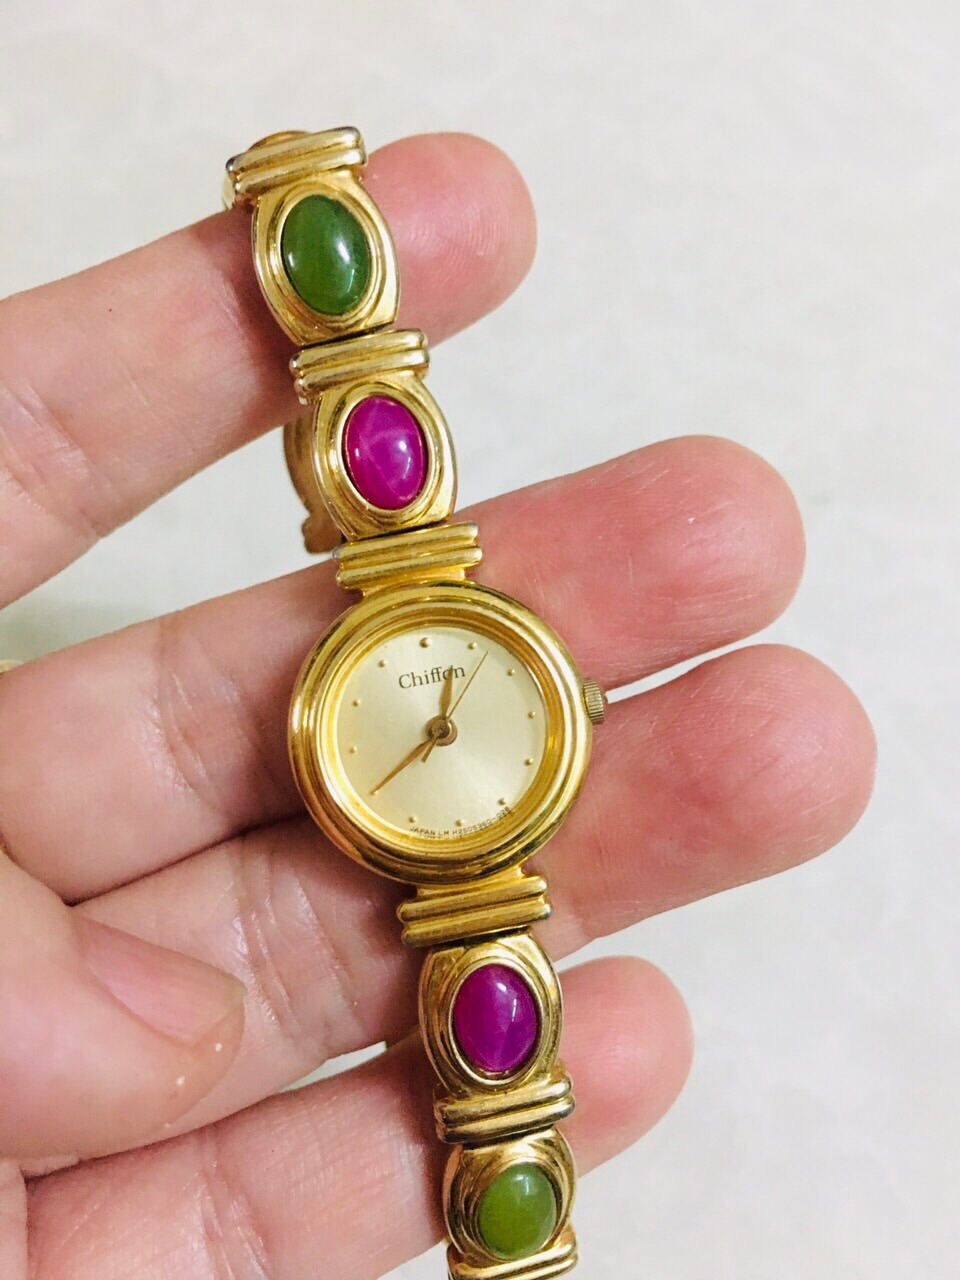 Đồng hồ Chiffon của Orient Nhật dáng lắc vàng rất đẹp